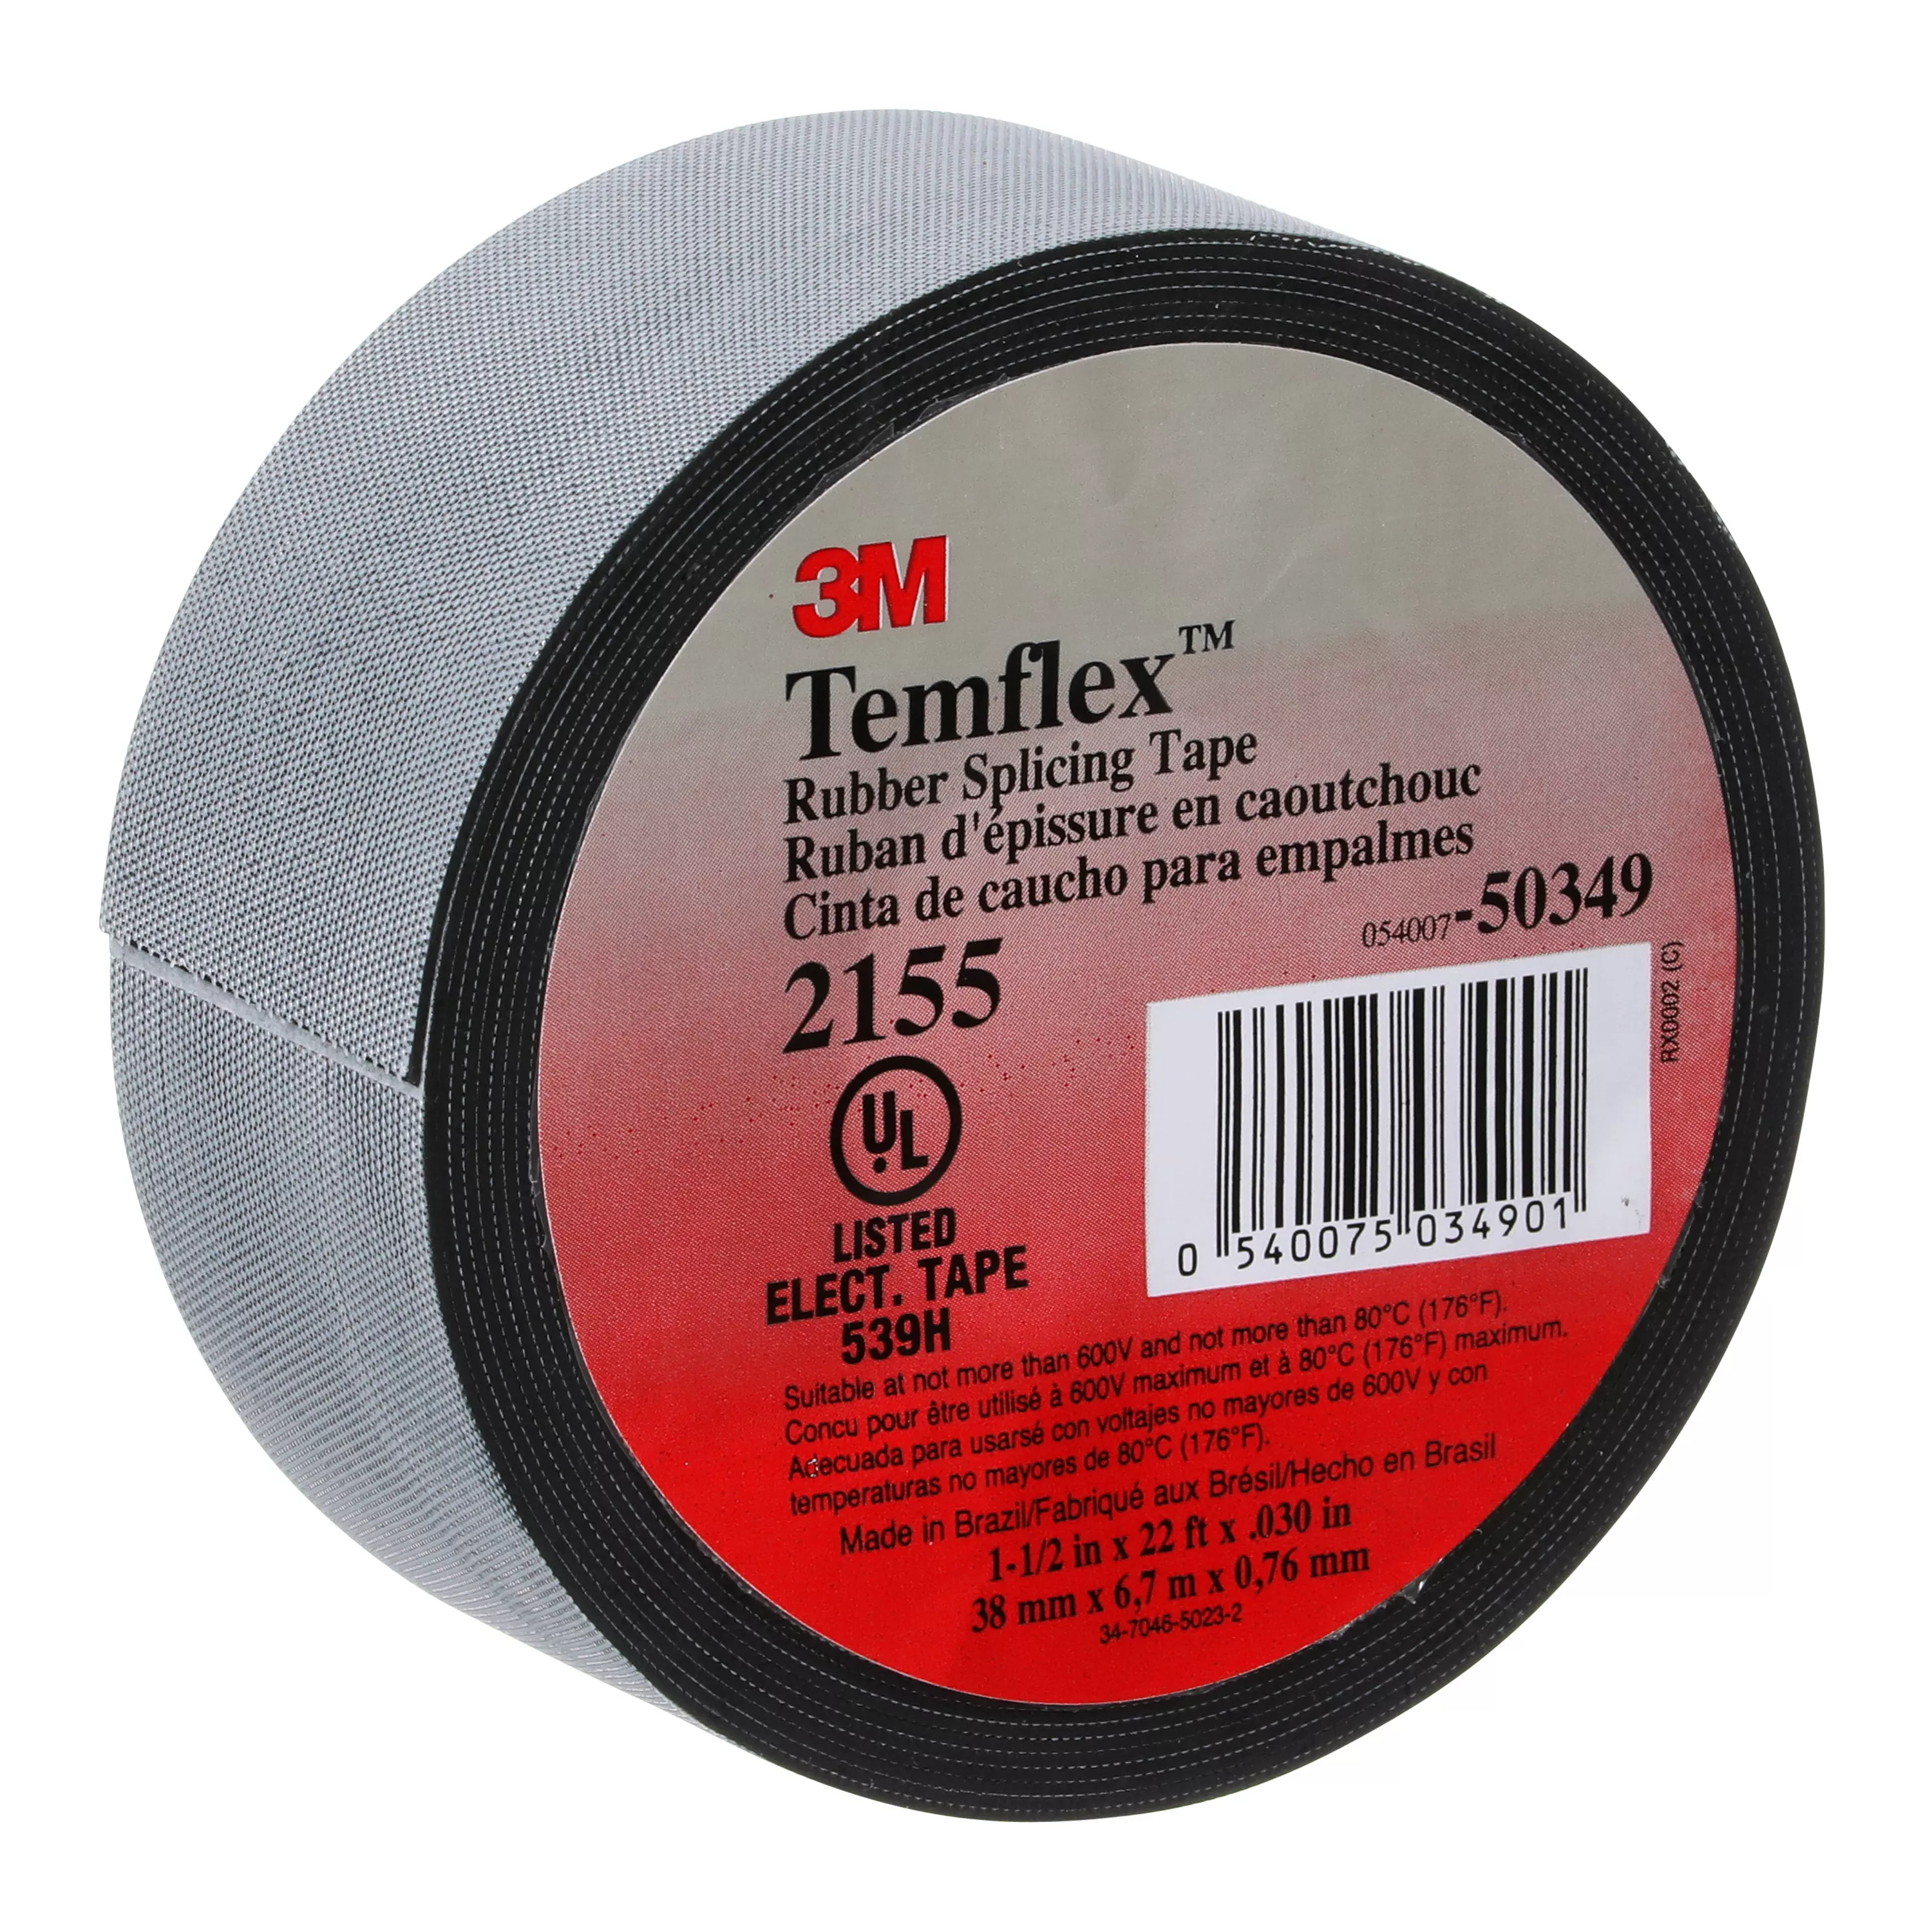 SKU 7000090115 | 3M™ Temflex™ Rubber Splicing Tape 2155